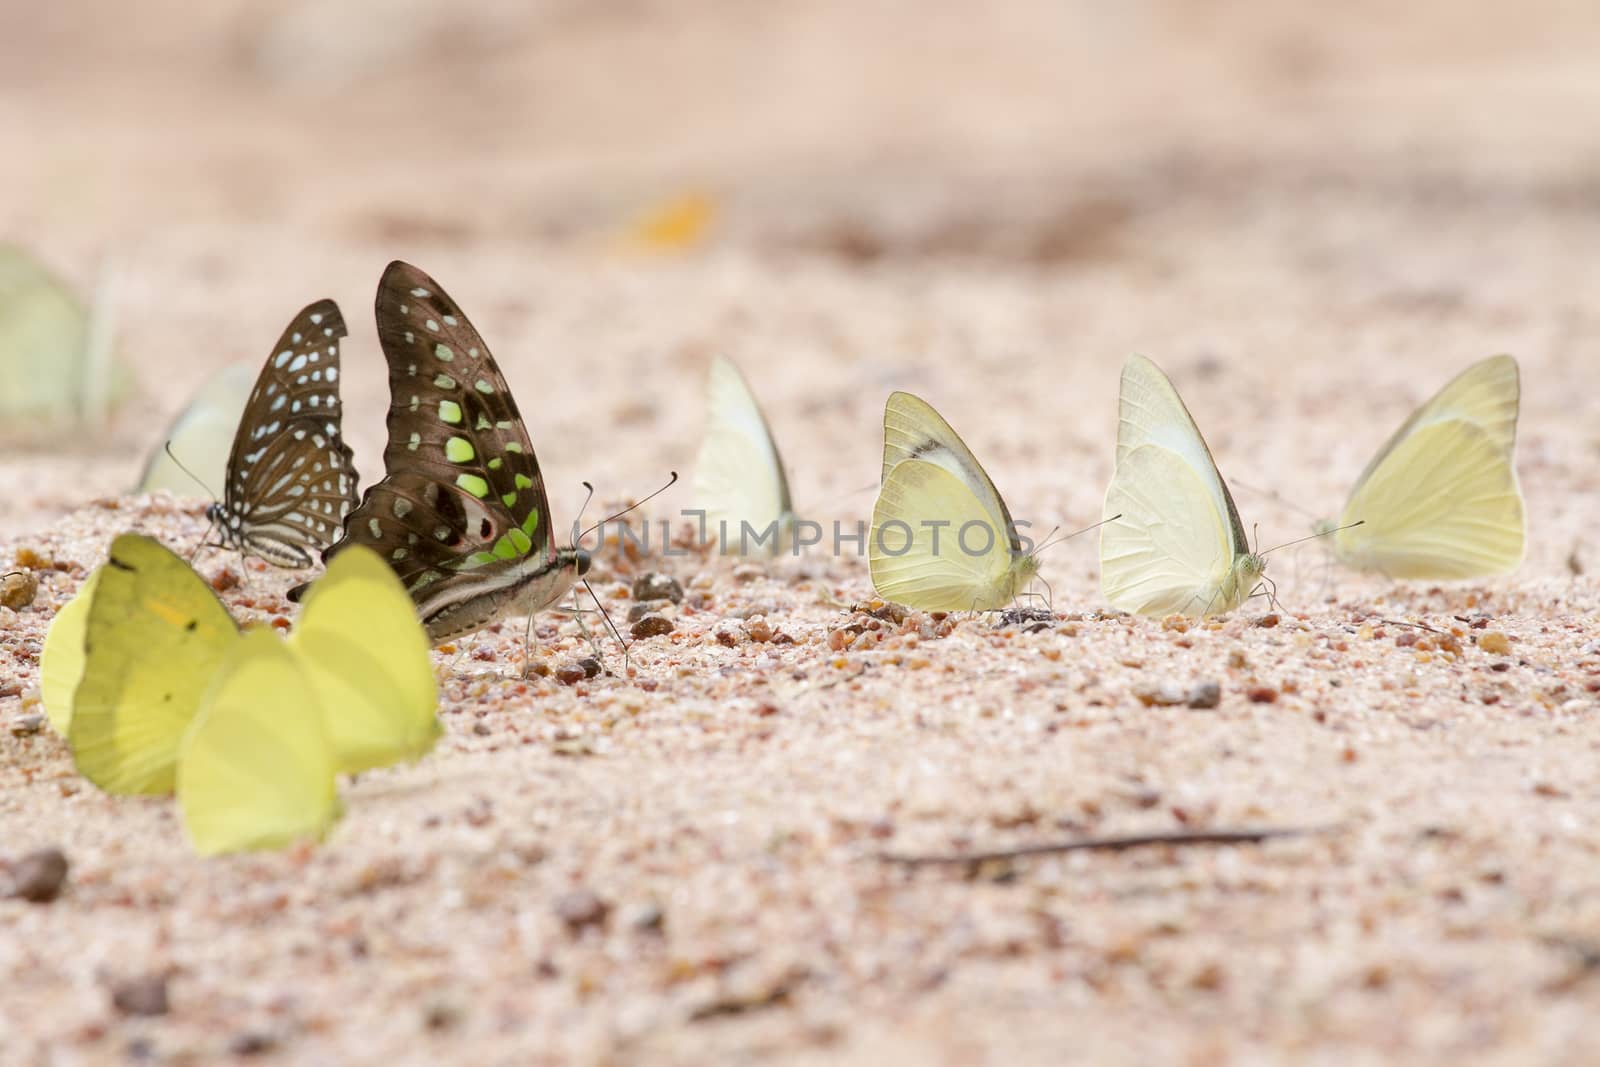  A pretty butterfly on a sandy soil background by TakerWalker